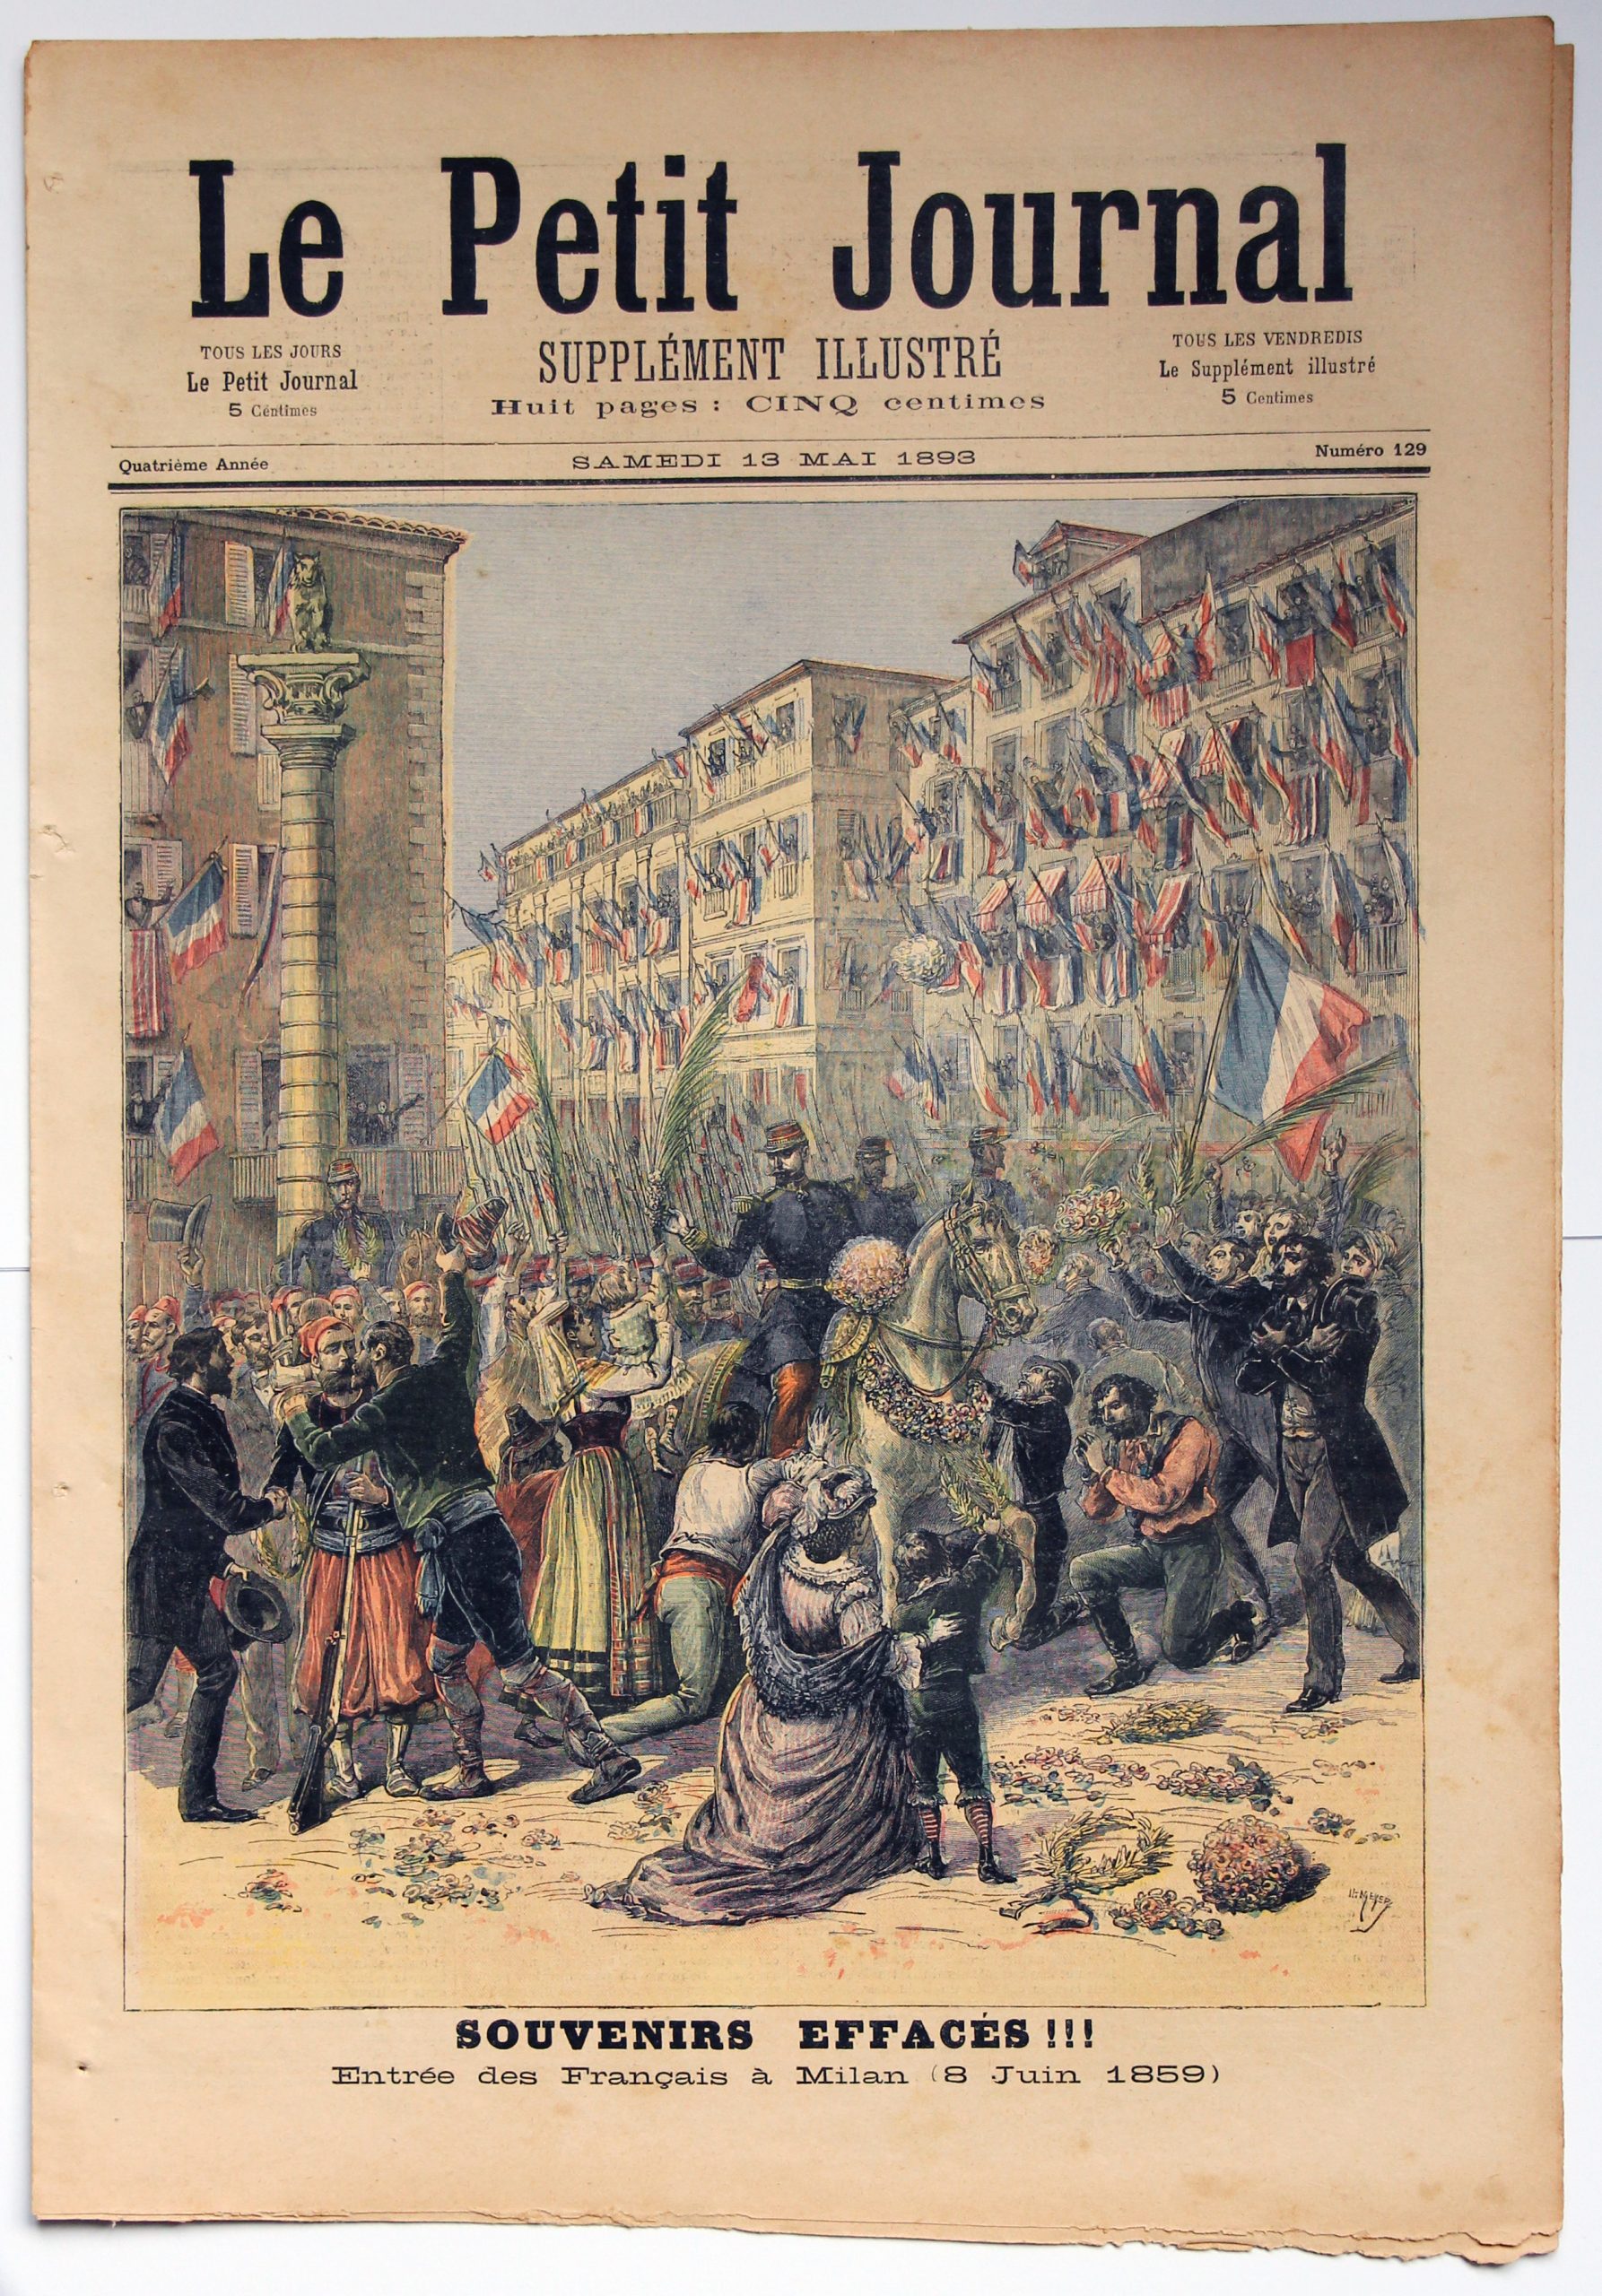 Le petit journal - supplément illustré - 13 mai 1893 - Souvenir Effacés - Entrée des Français a Milan 1859